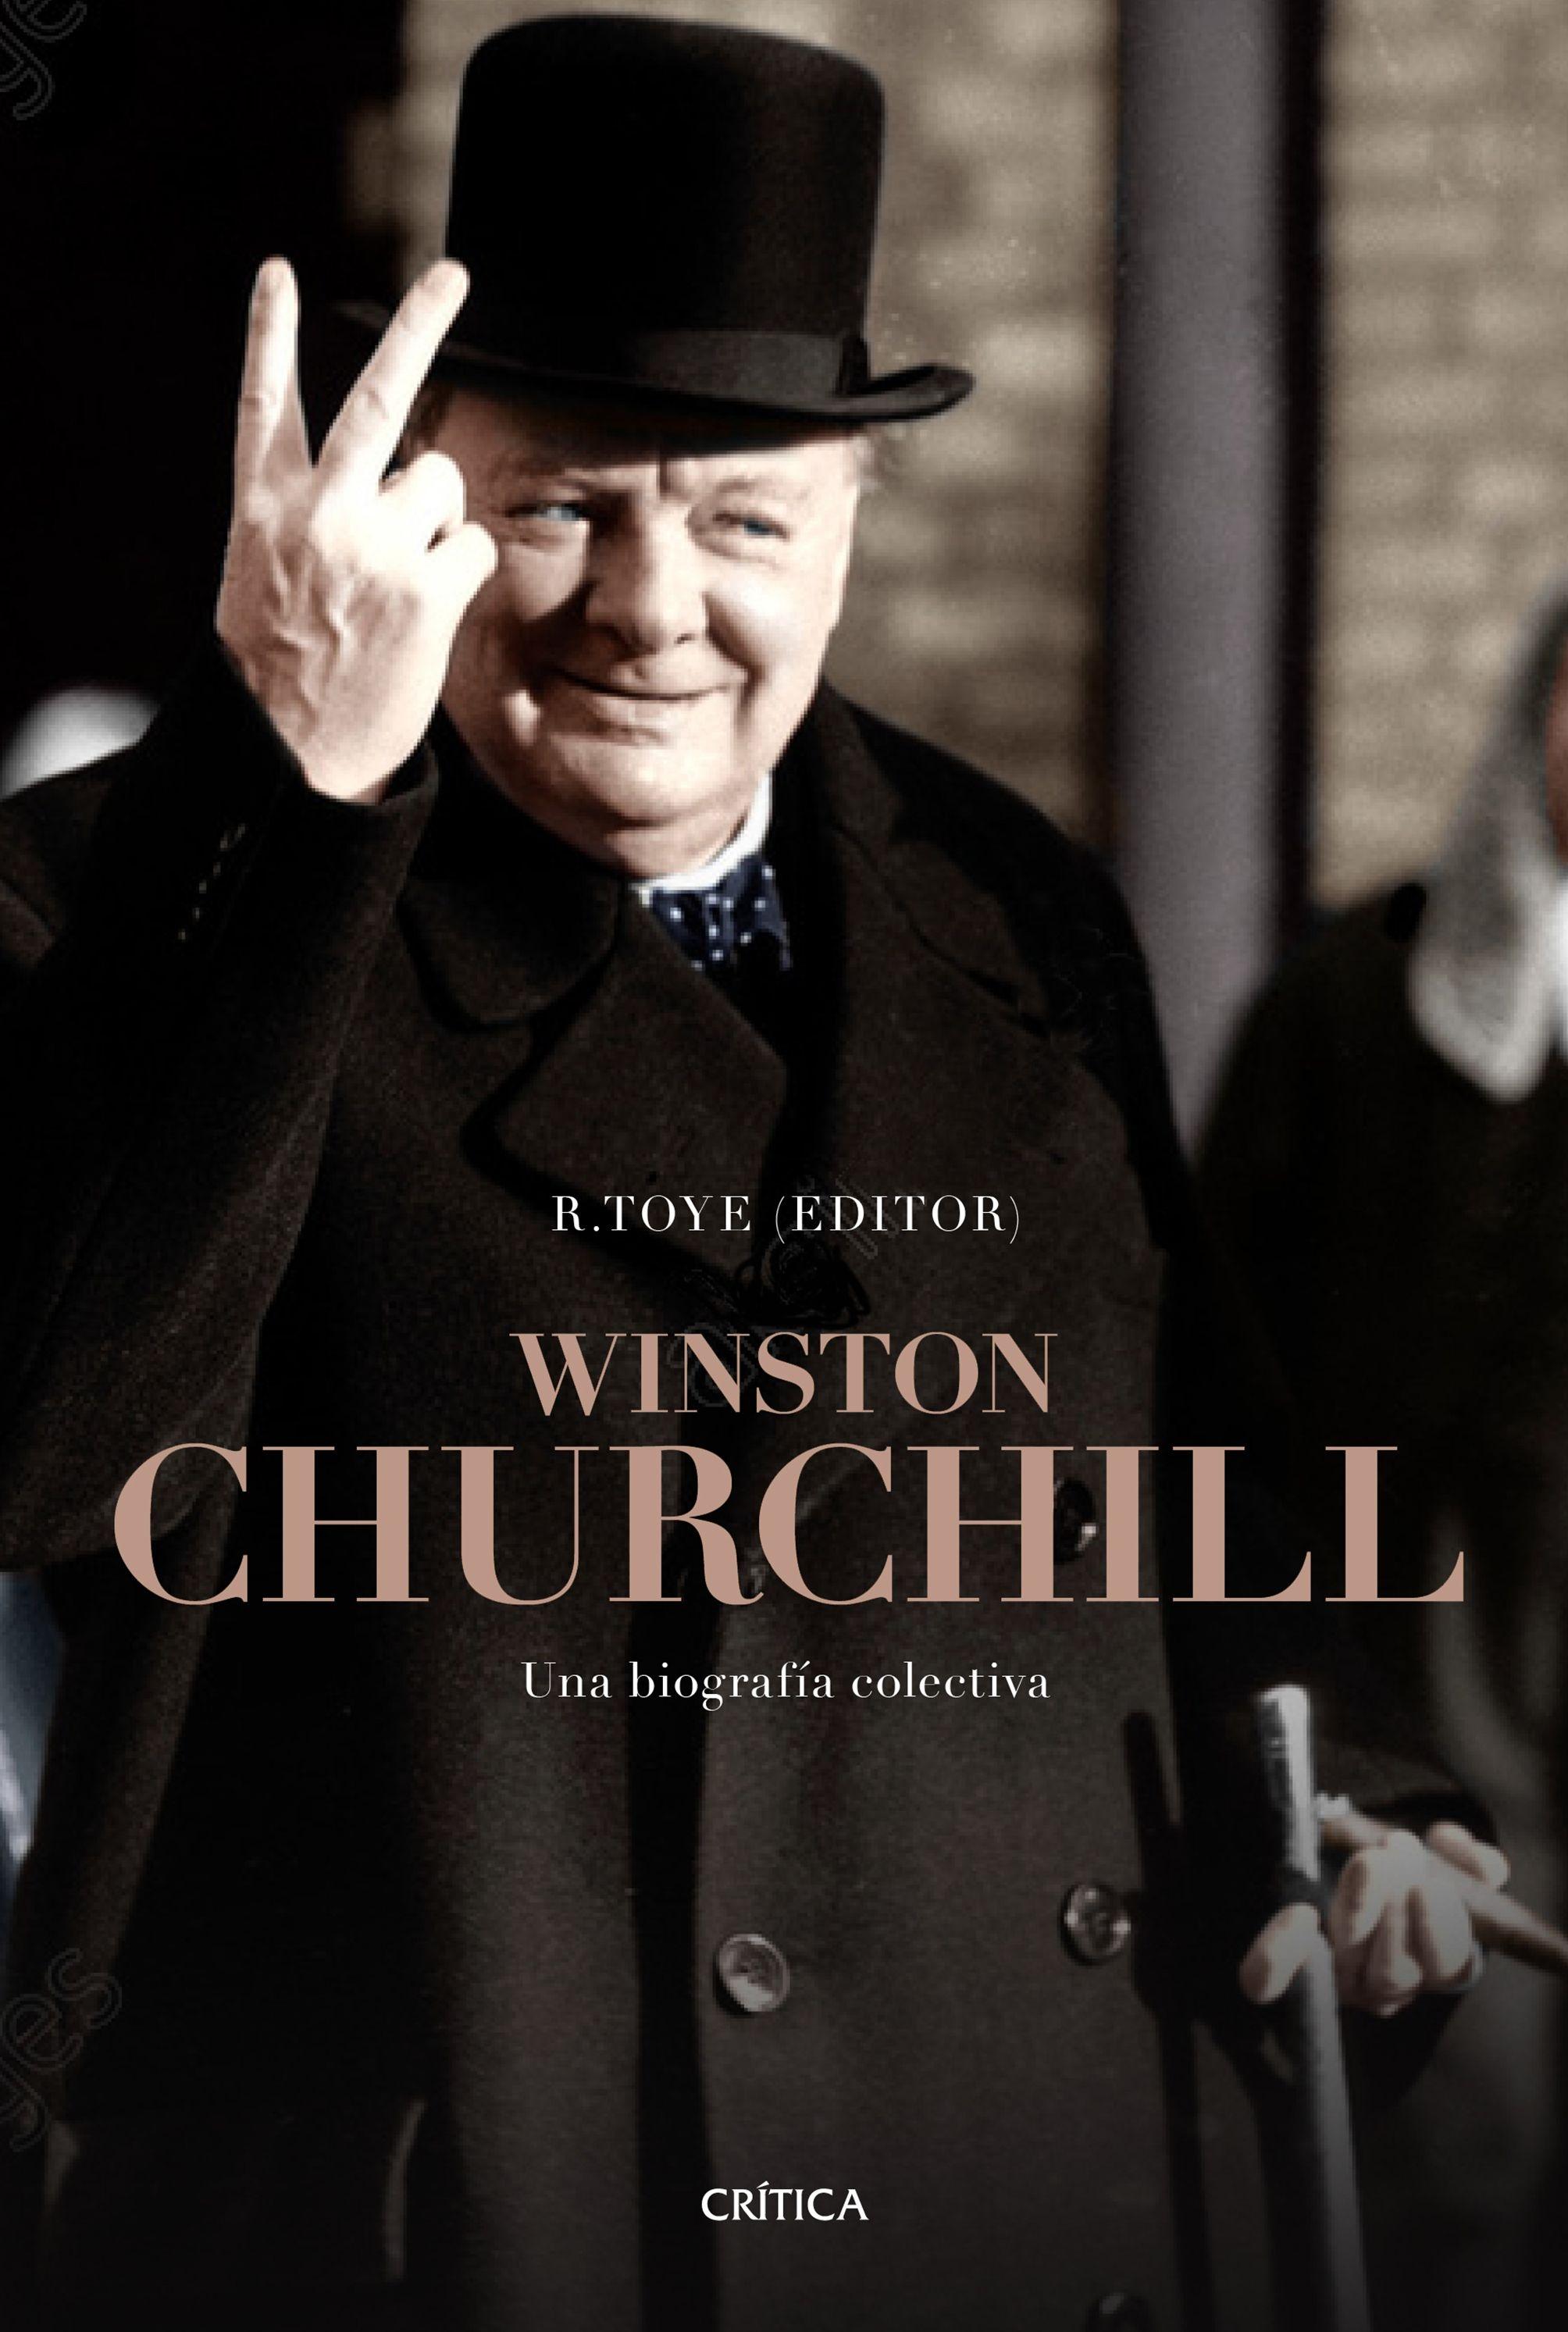 Winston Churchill "Una Biografía Colectiva"